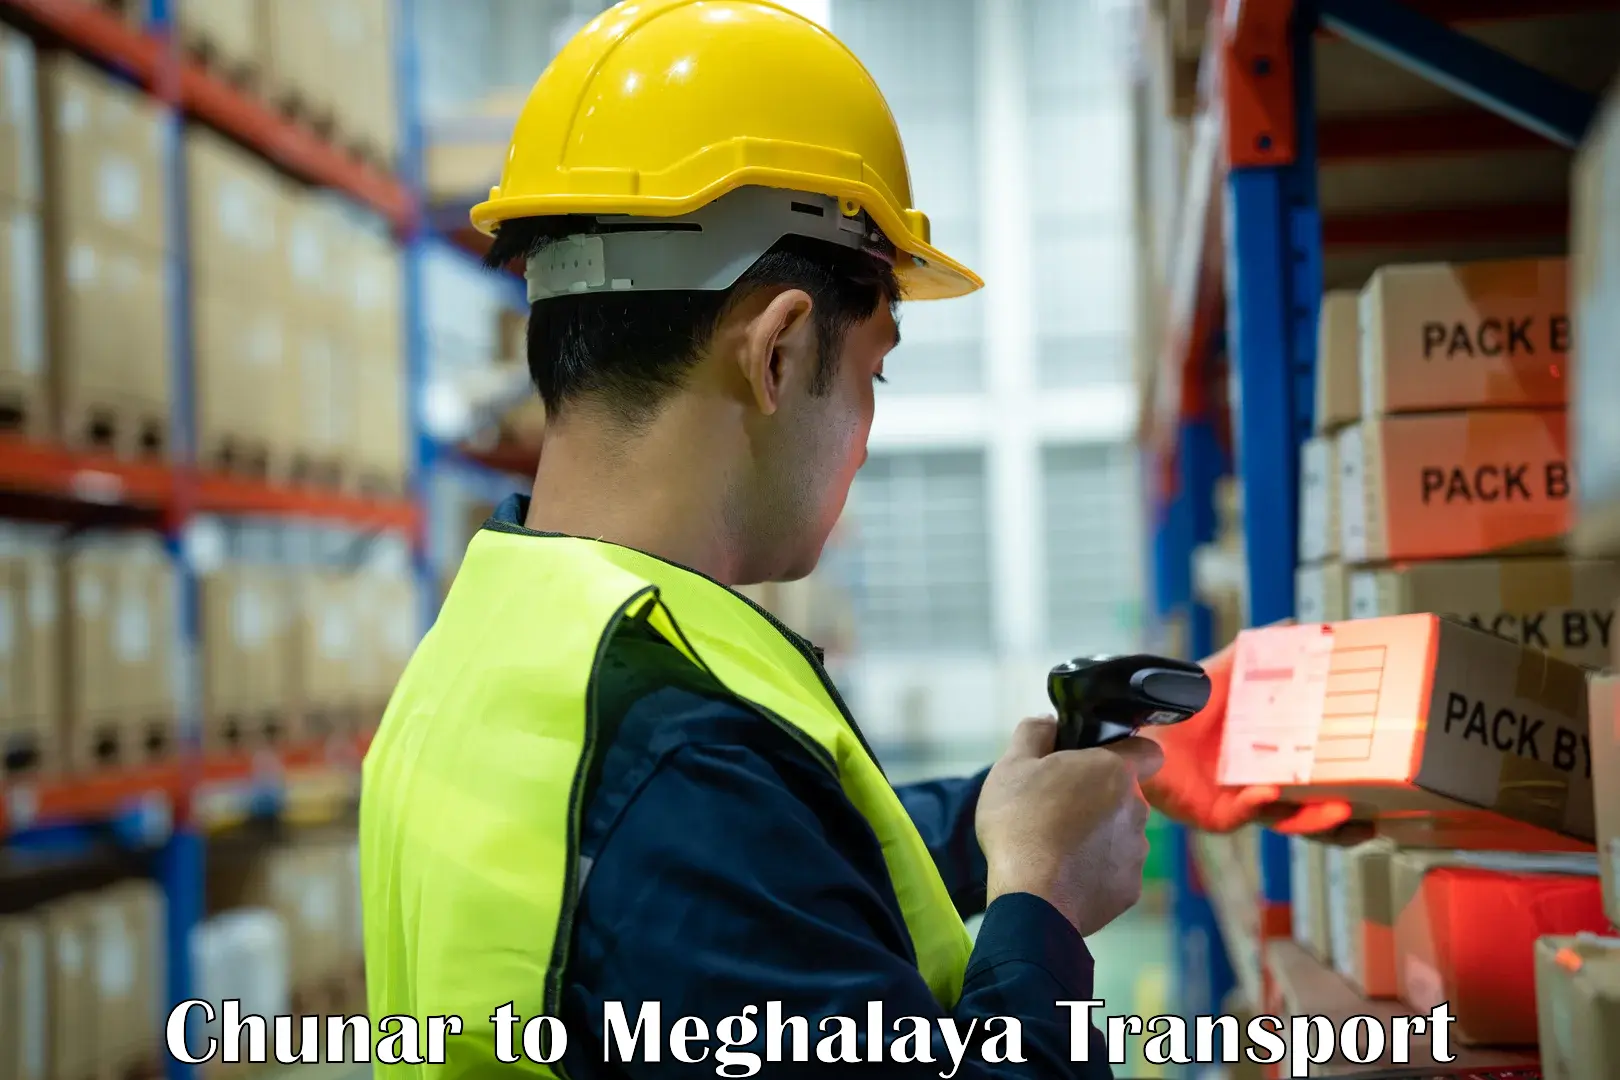 Bike shipping service Chunar to Meghalaya